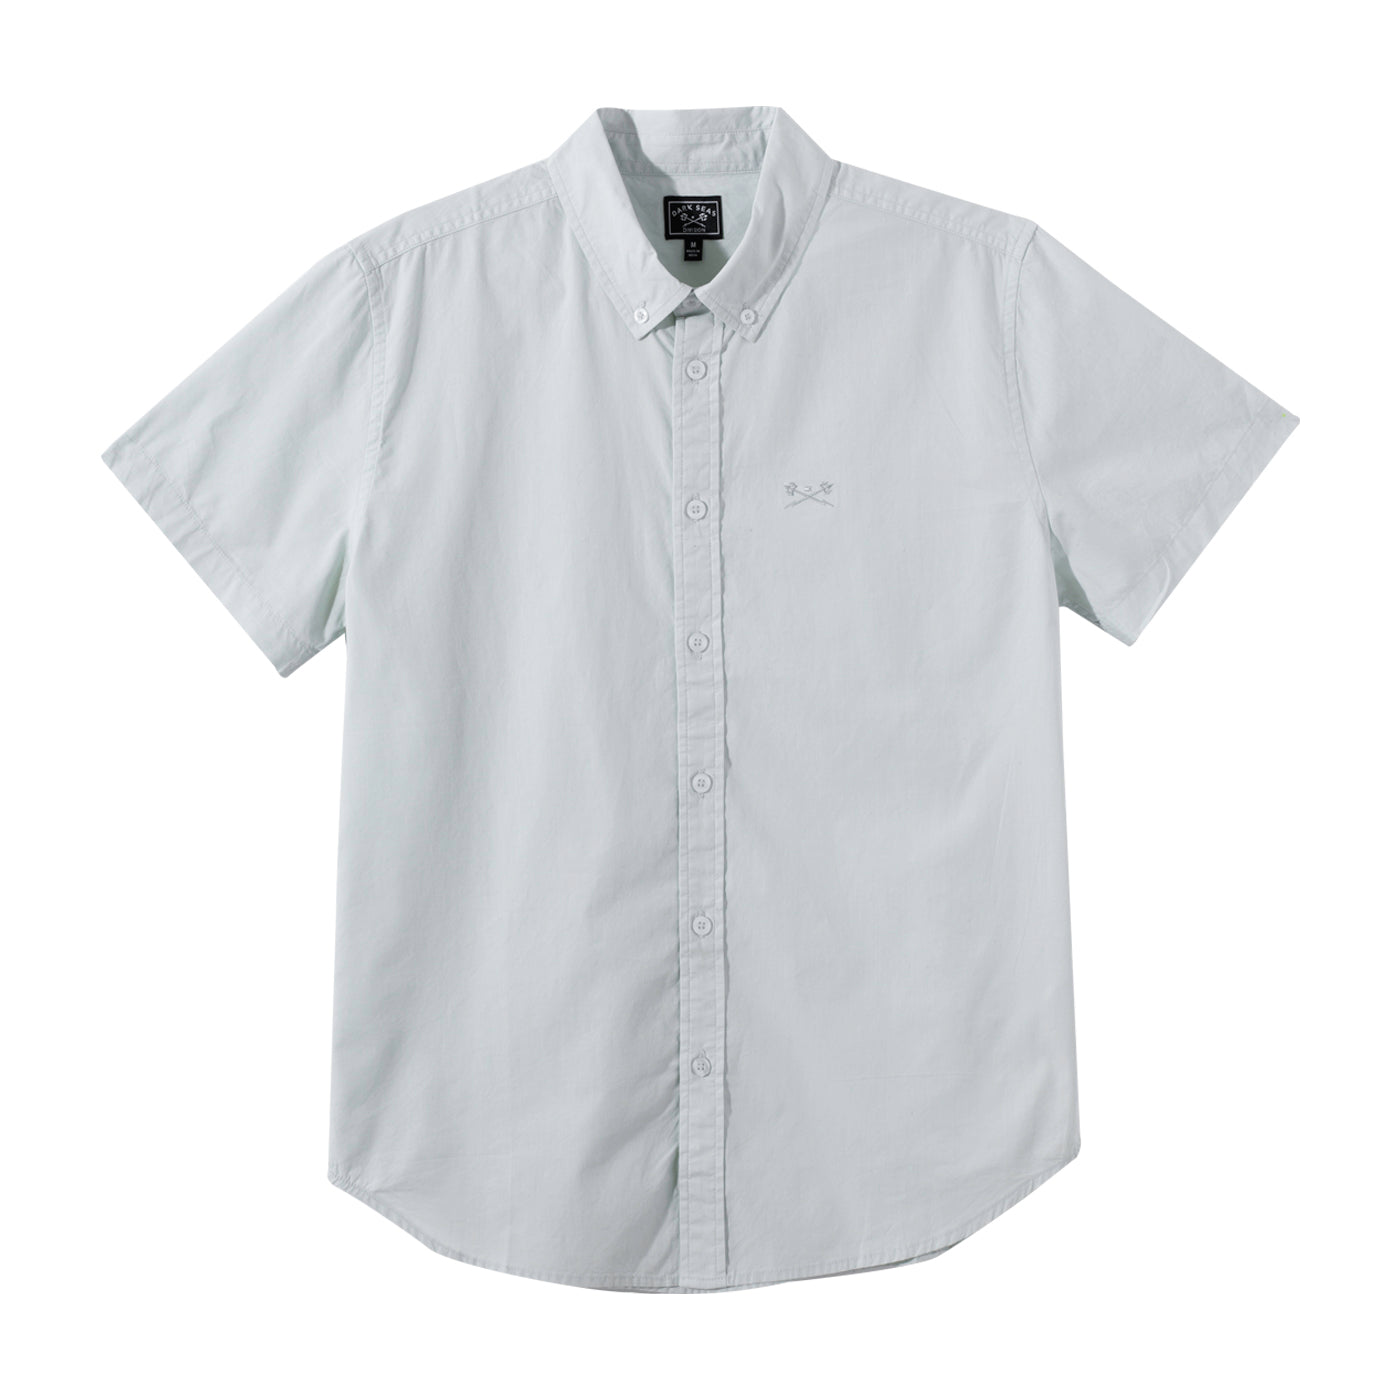 Horze Men's Dorian Technical Short Sleeve Sun Shirt - Peacoat Dark Blue/White